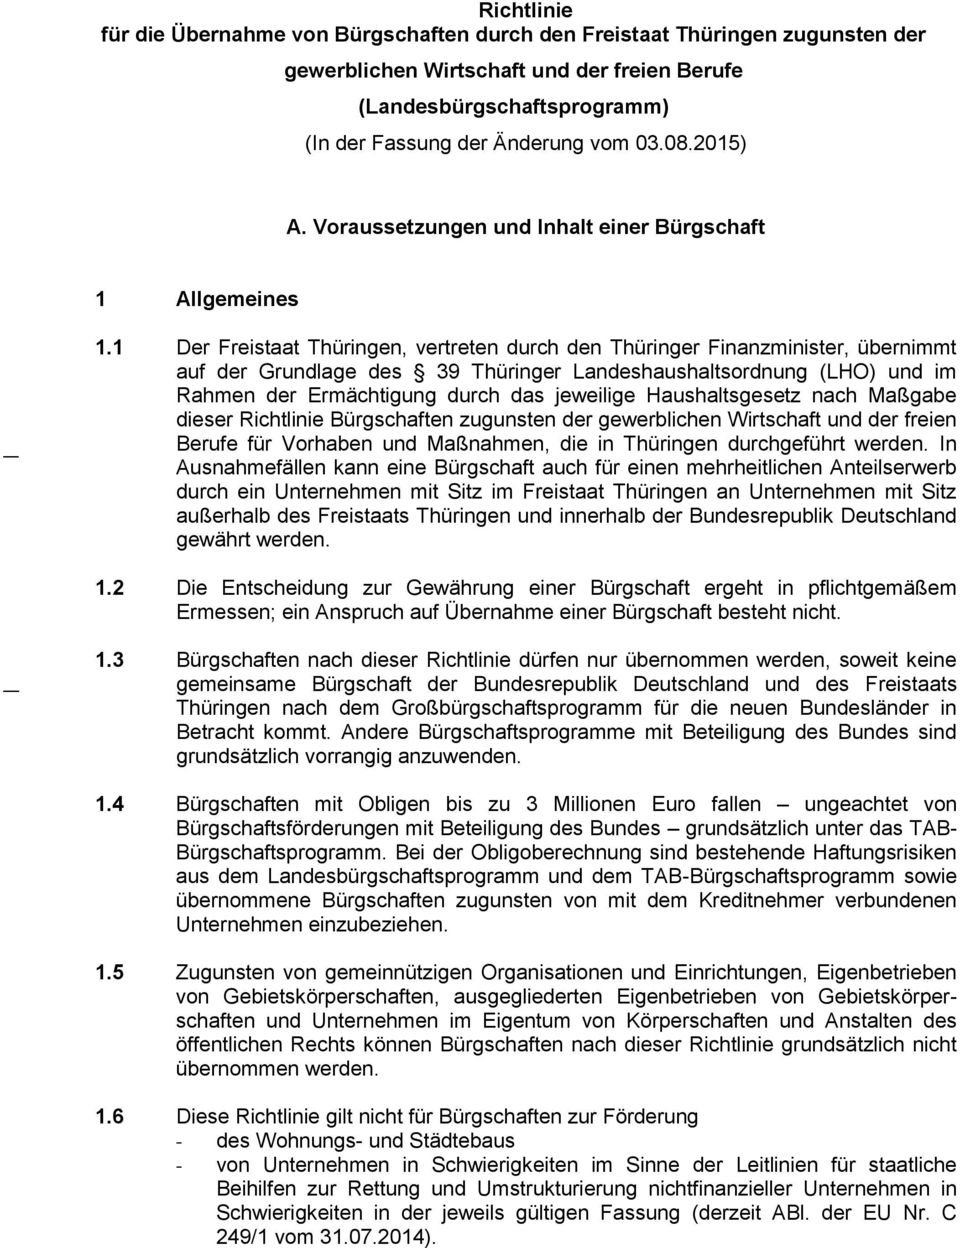 1 Der Freistaat Thüringen, vertreten durch den Thüringer Finanzminister, übernimmt auf der Grundlage des 39 Thüringer Landeshaushaltsordnung (LHO) und im Rahmen der Ermächtigung durch das jeweilige